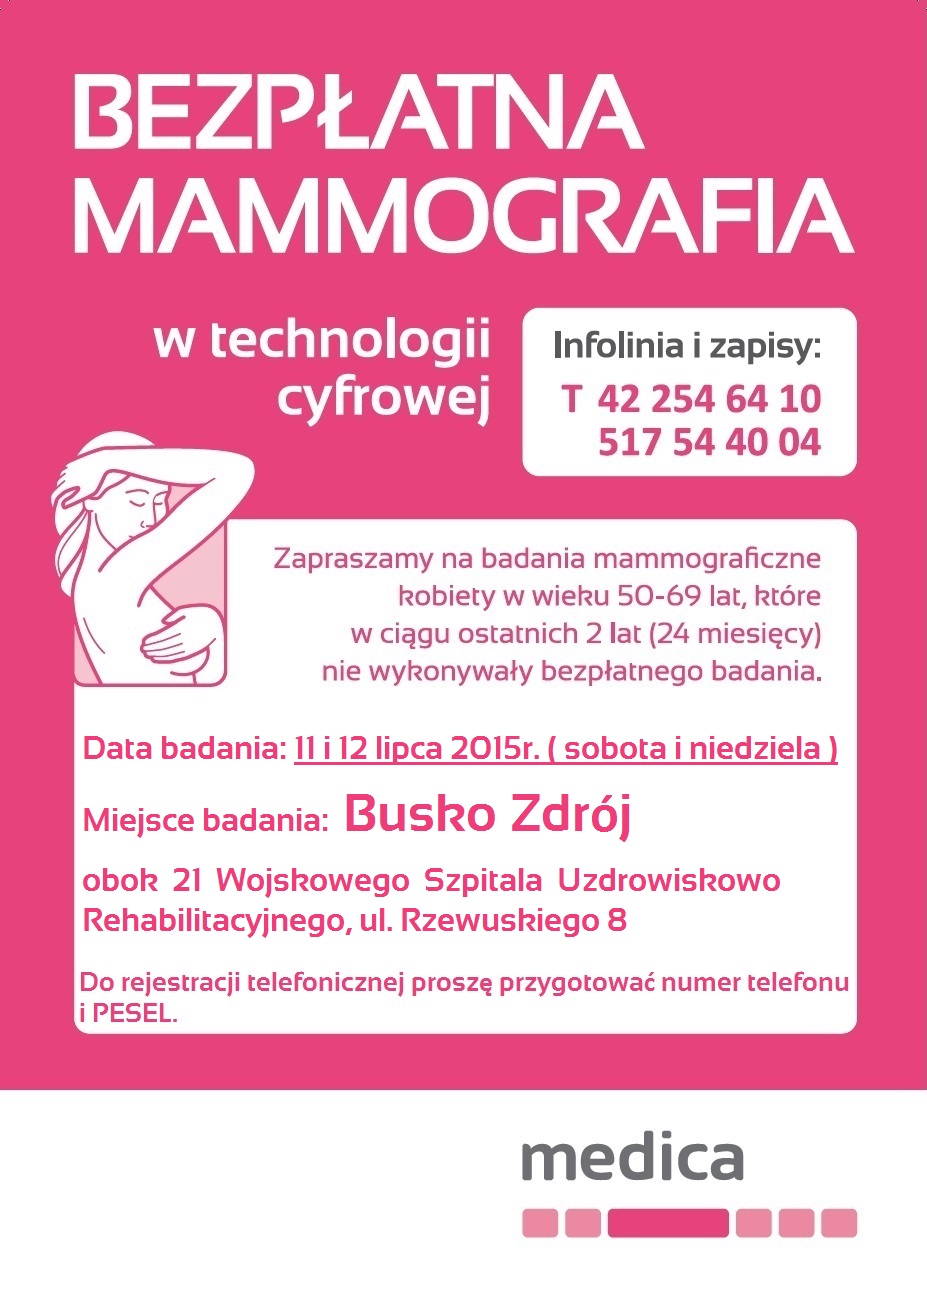 plakat w formie elektronicznej -  bezpłatne badania mammograficzne dla kobiet w wieku 50 - 69 lat